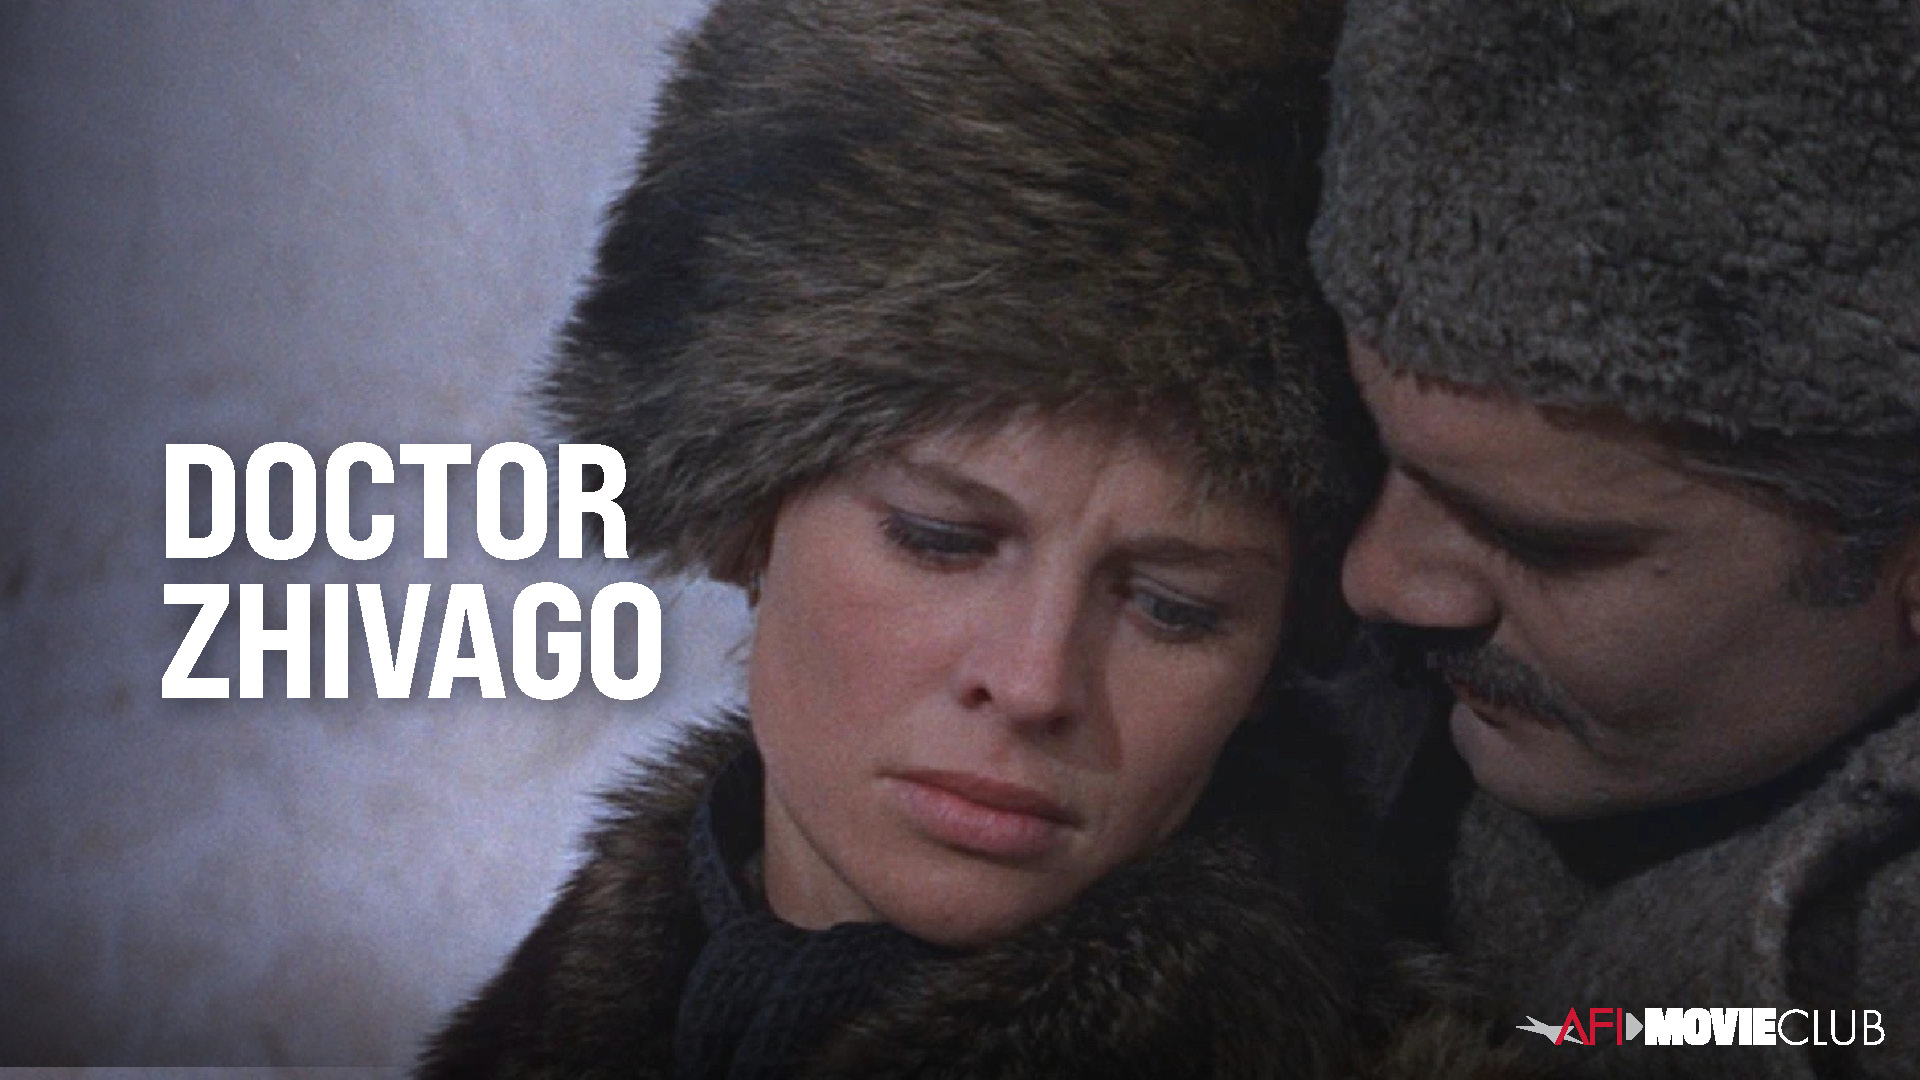 Doctor Zhivago Film Still - Julie Christie and Omar Sharif